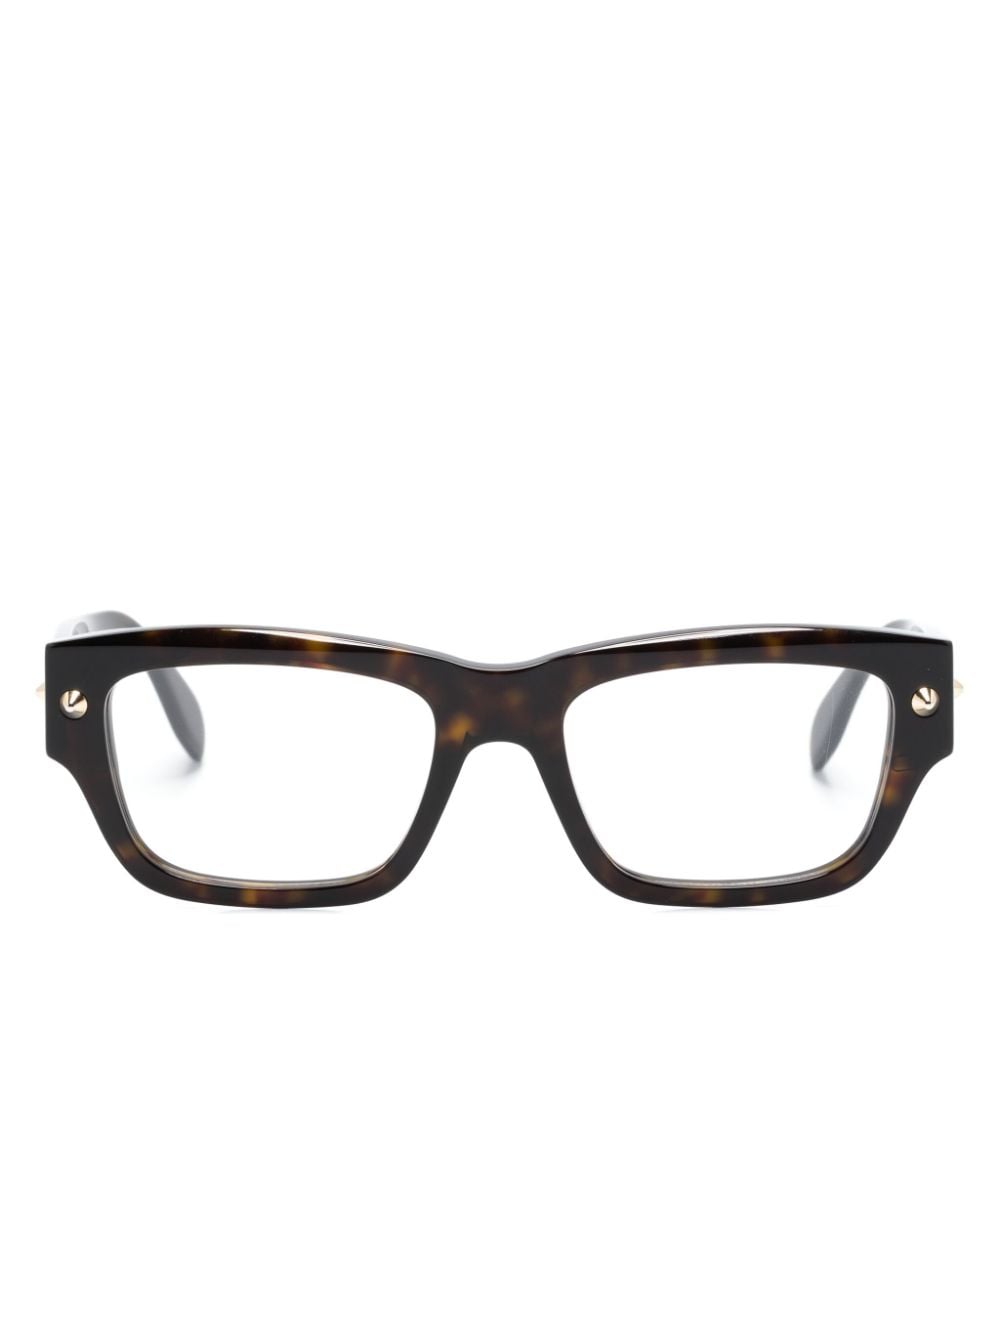 Alexander Mcqueen Tortoiseshell Rectangle-frame Glasses In Black